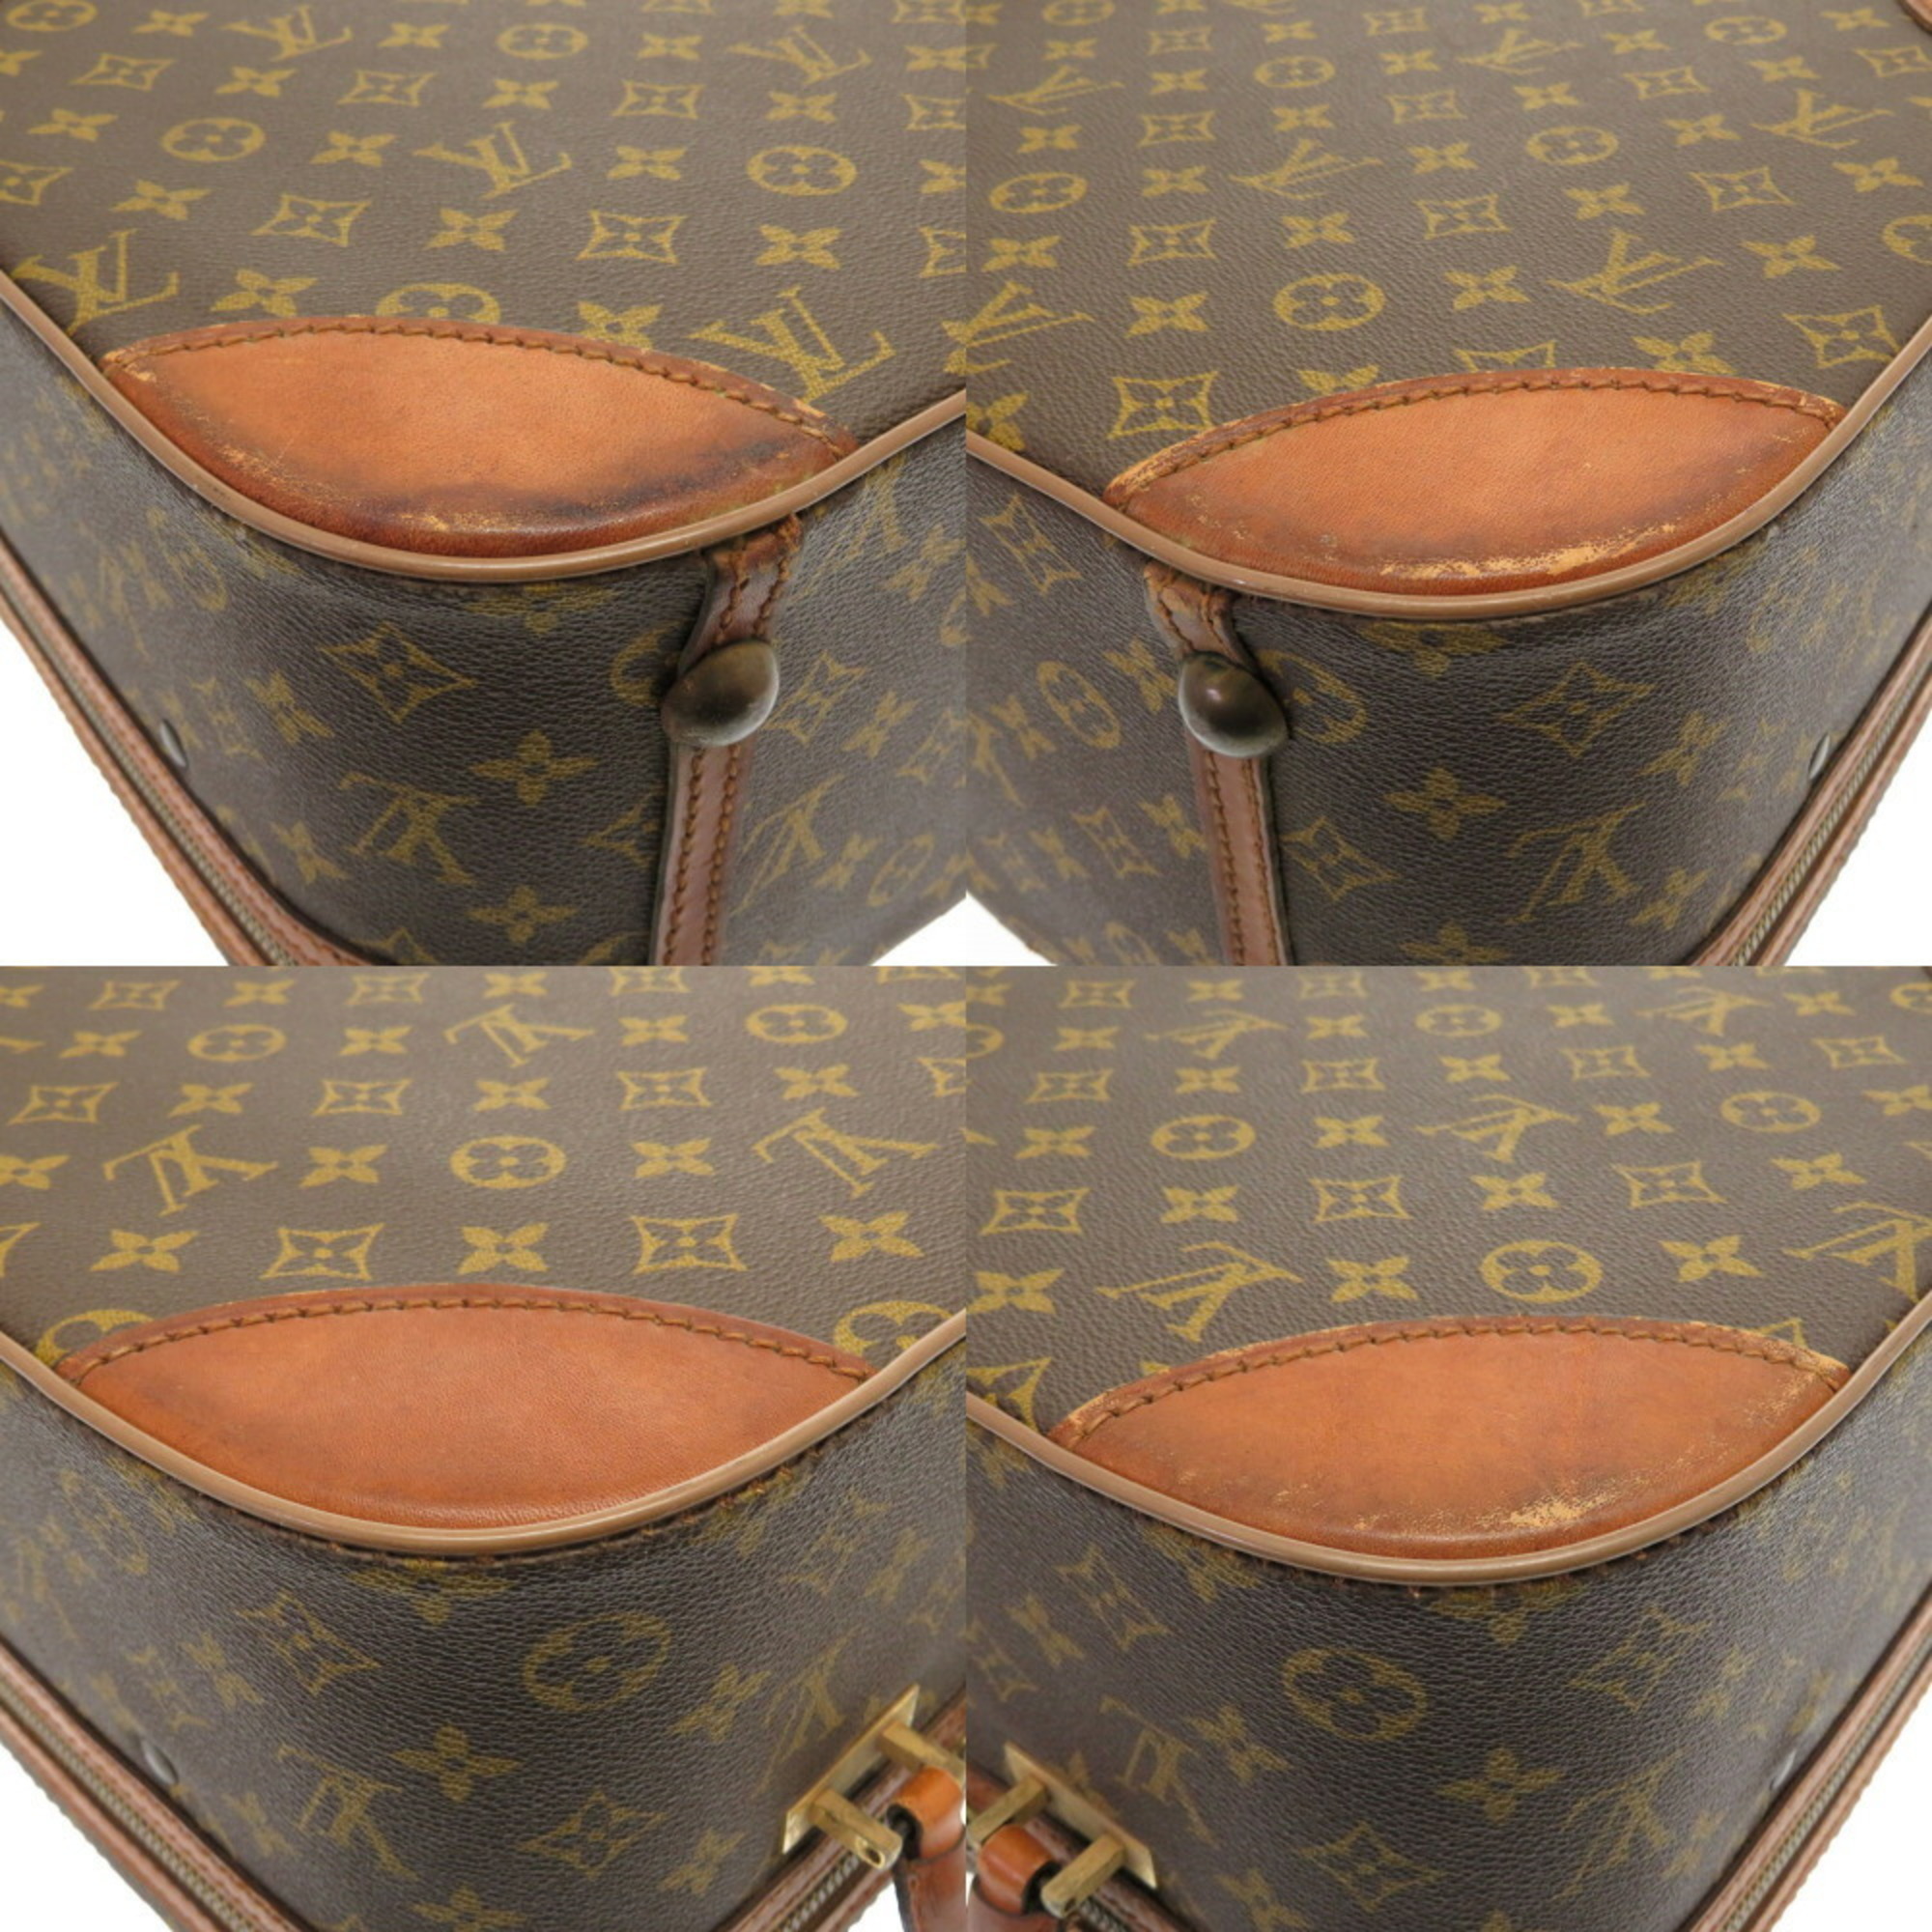 Louis Vuitton LOUIS VUITTON Monogram Mini Trunk Case Bag